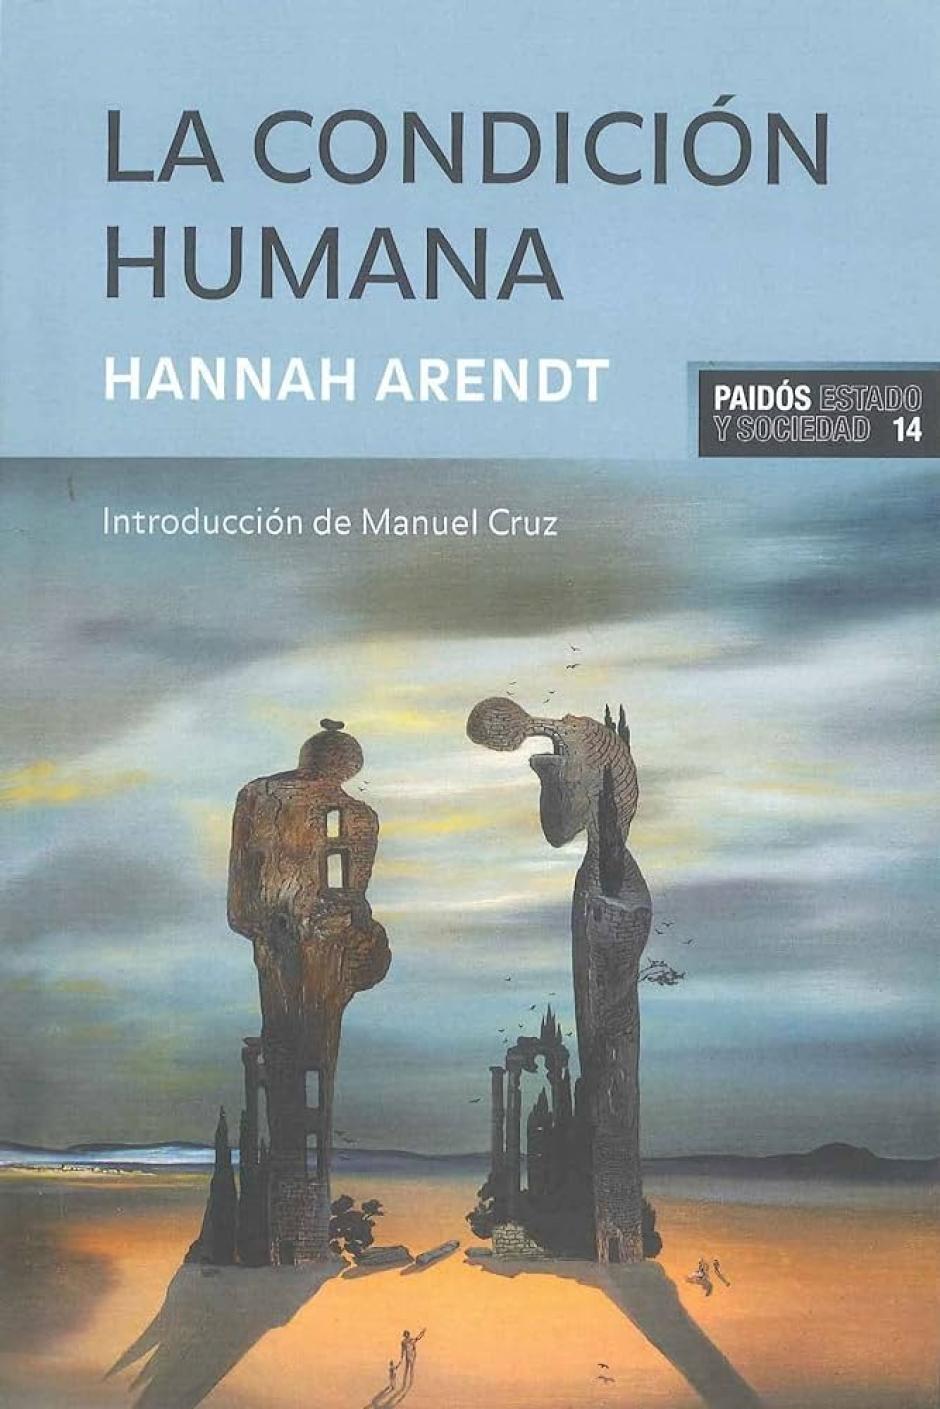 La condición humana de Hanna Arendt